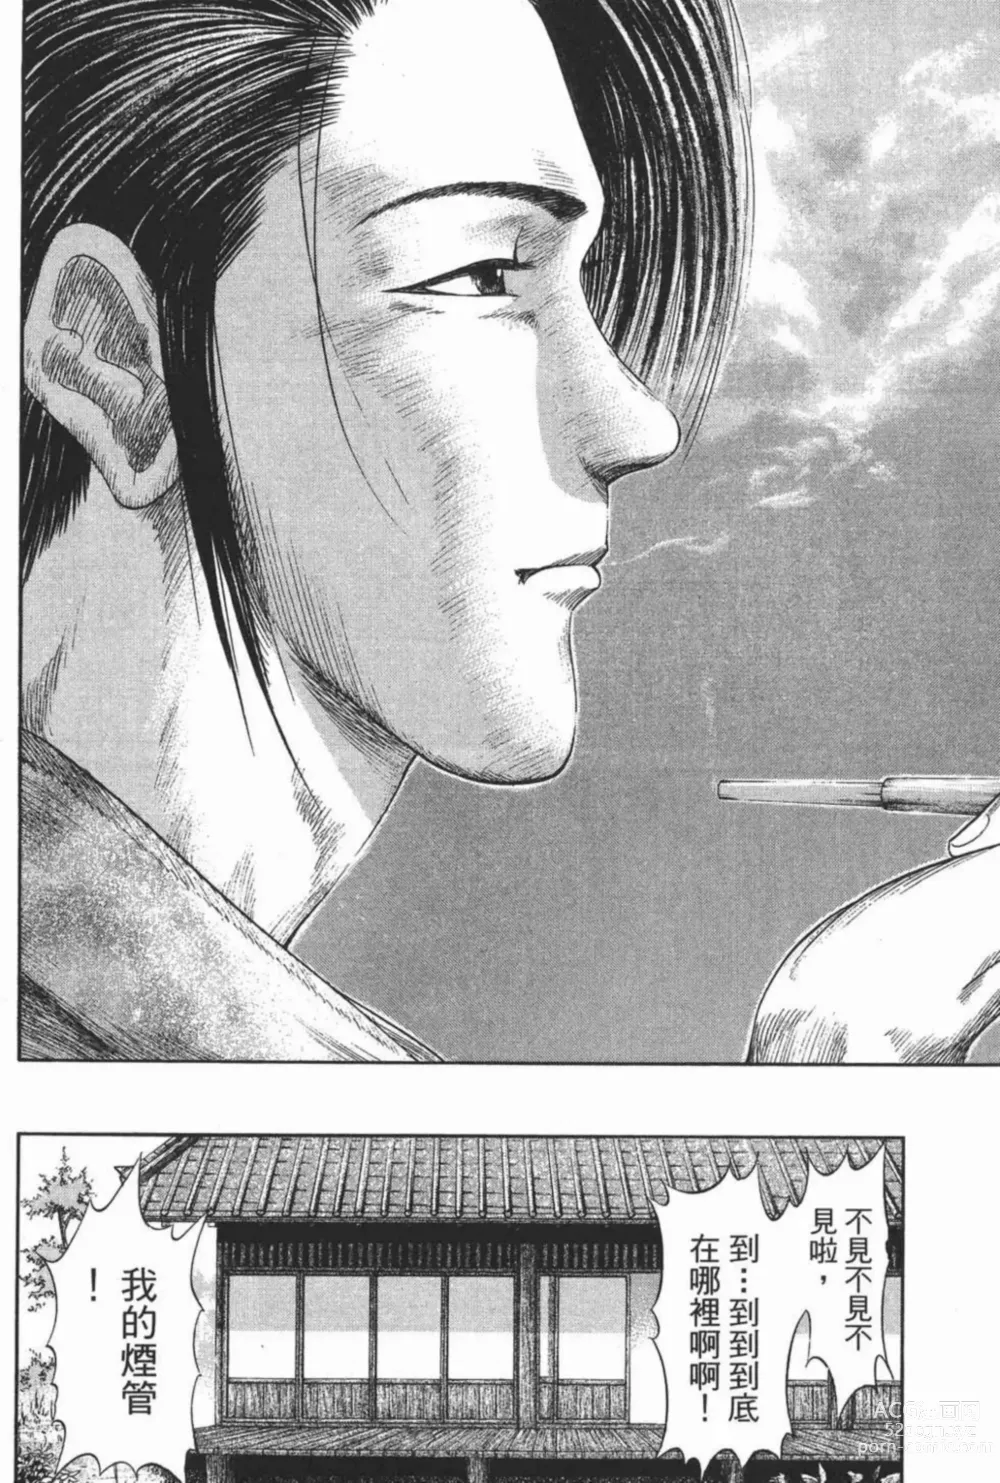 Page 206 of manga [宫下英树]战国第一卷［中文］